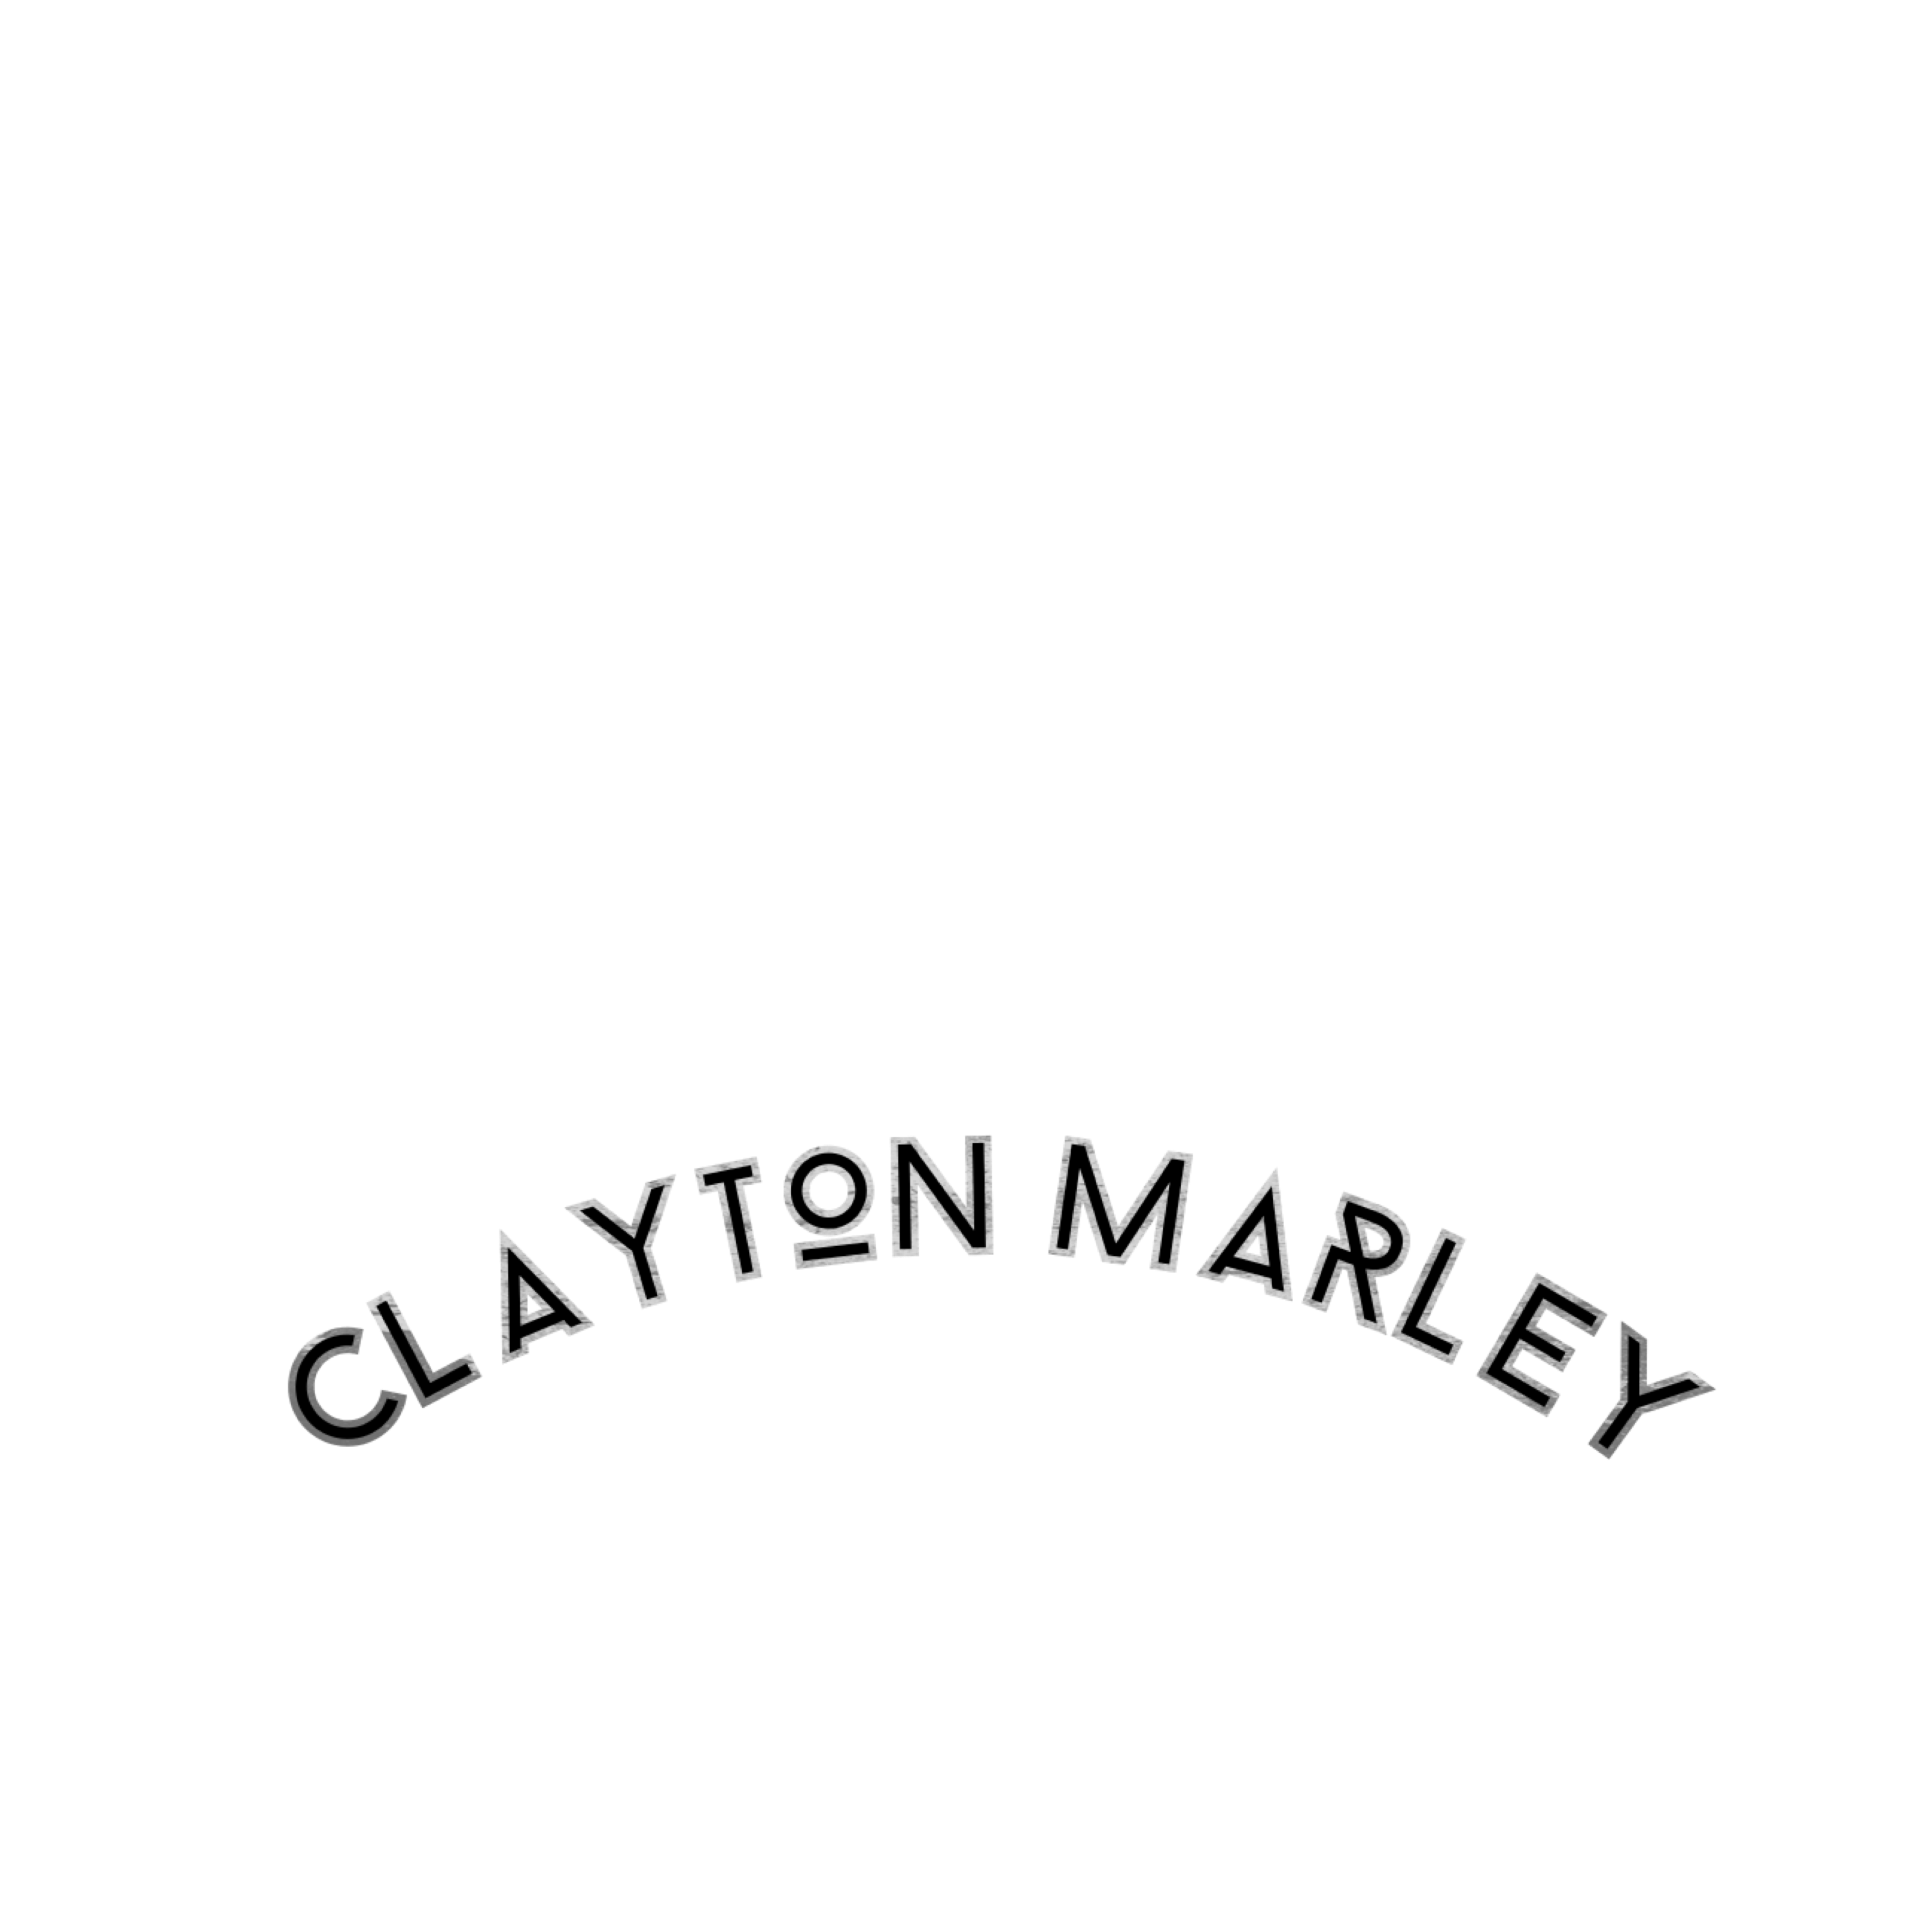 Conception Clayton Marley  /  9431-7930 Qc inc